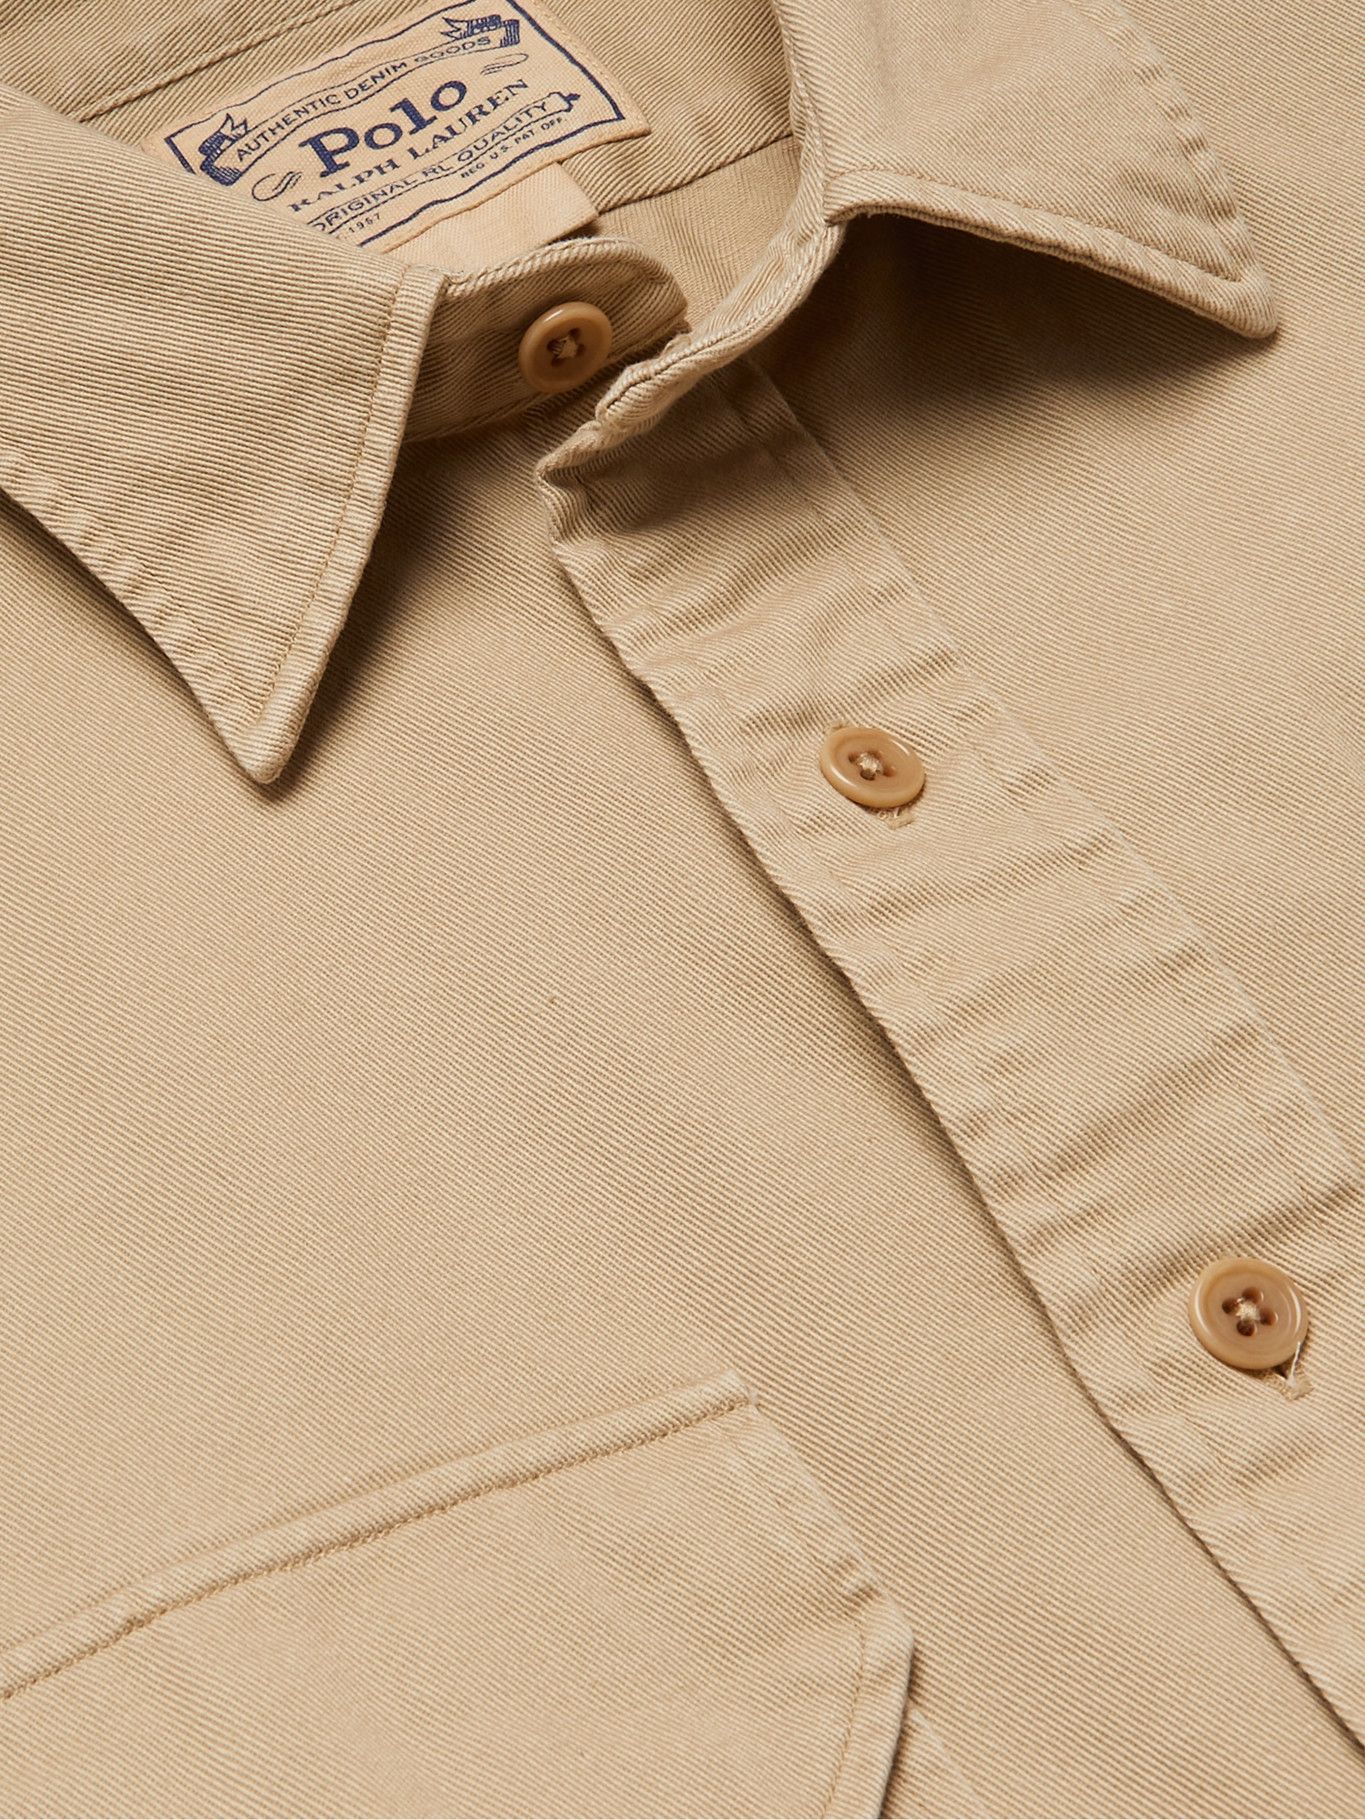 POLO RALPH LAUREN - Cotton-Twill Shirt - Brown Polo Ralph Lauren